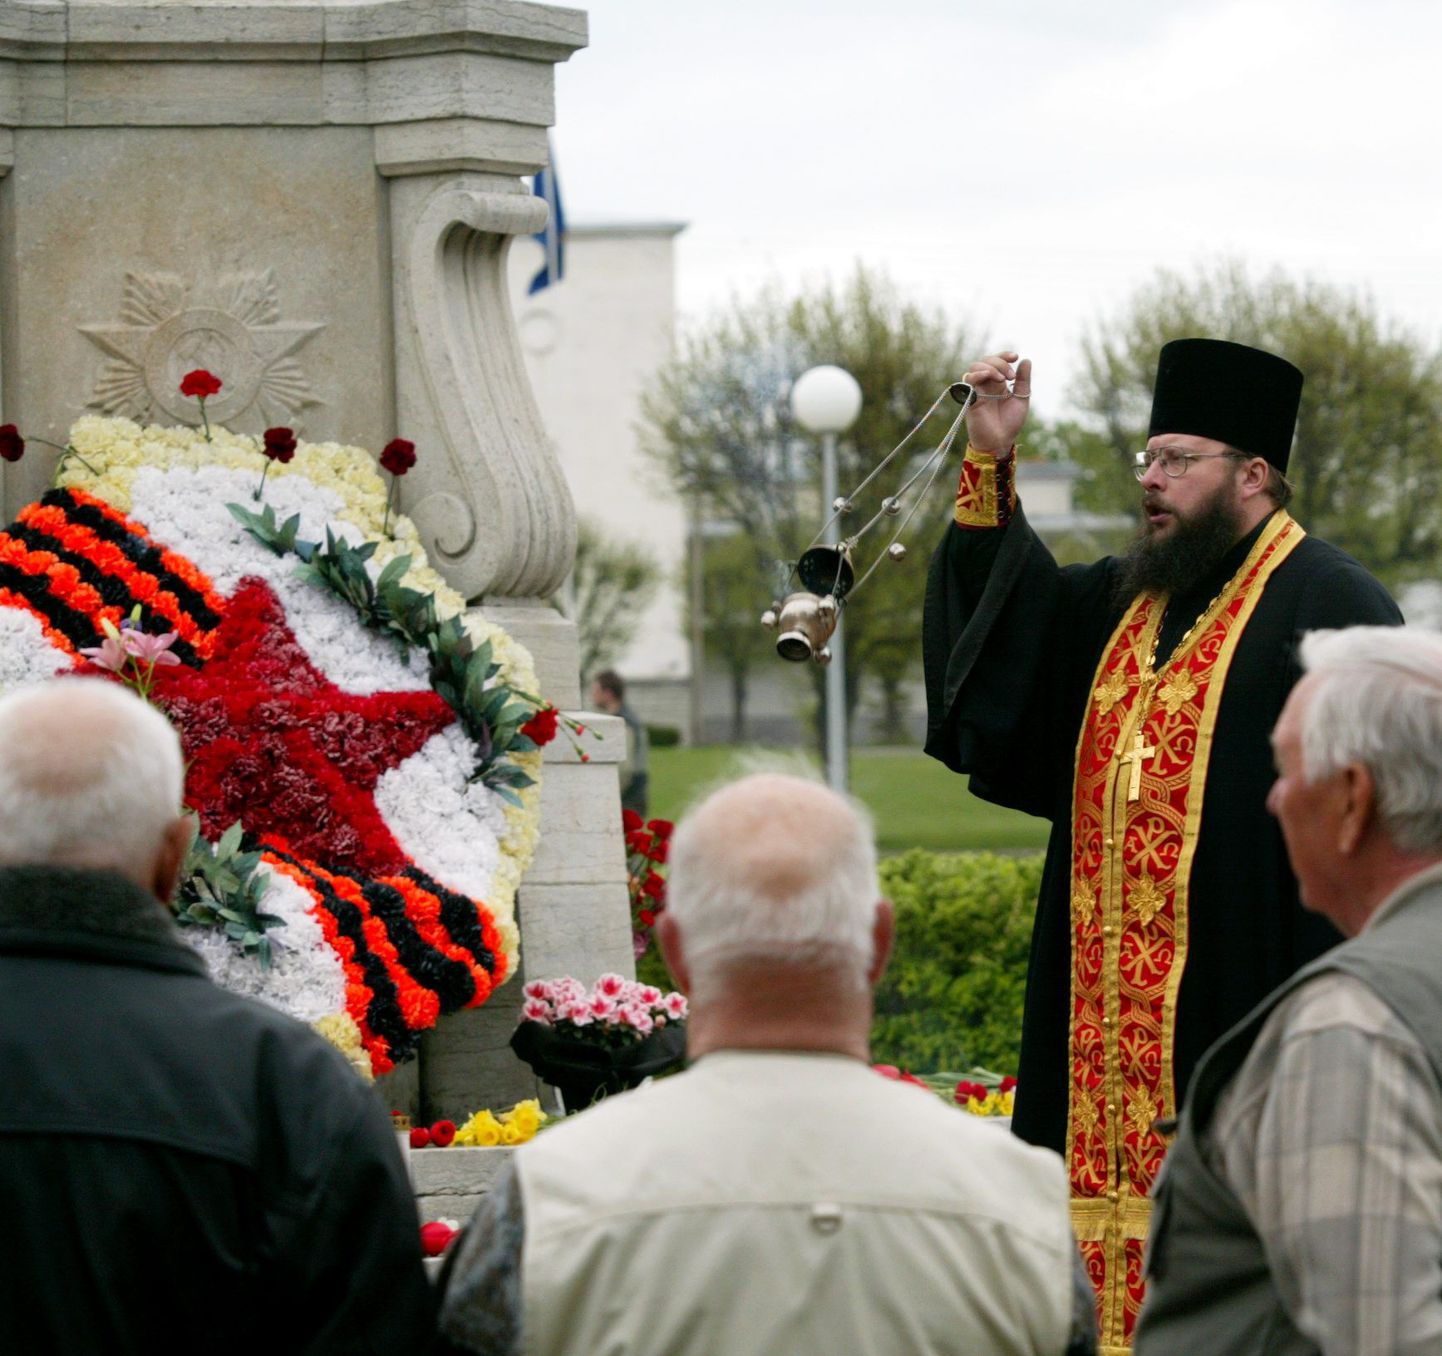 Pilt on tehtud eelmise aasta 9. mail Rakveres asuva punasõdurite mälestusmärgi juures.